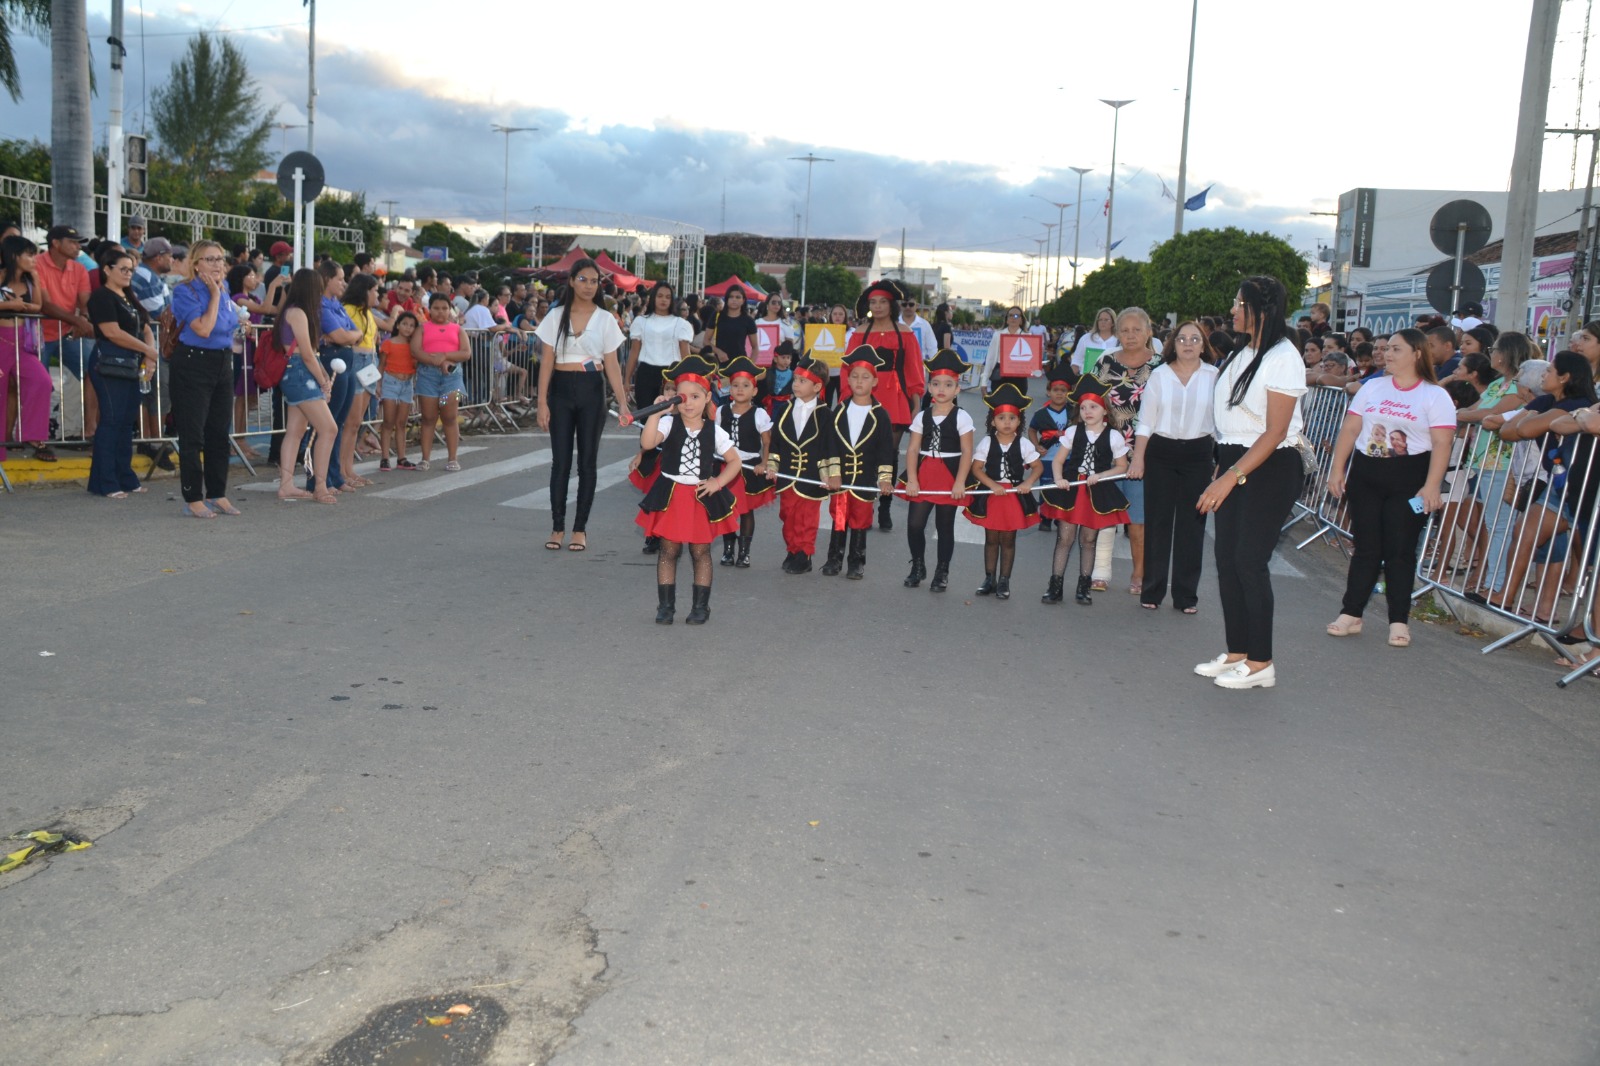 Desfiles-Civicos-em-Monteiro-acontecem-com-grande-presenca-de-publico-e-autoridades-6 Desfiles Cívicos em Monteiro acontecem com grande presença de público e autoridades